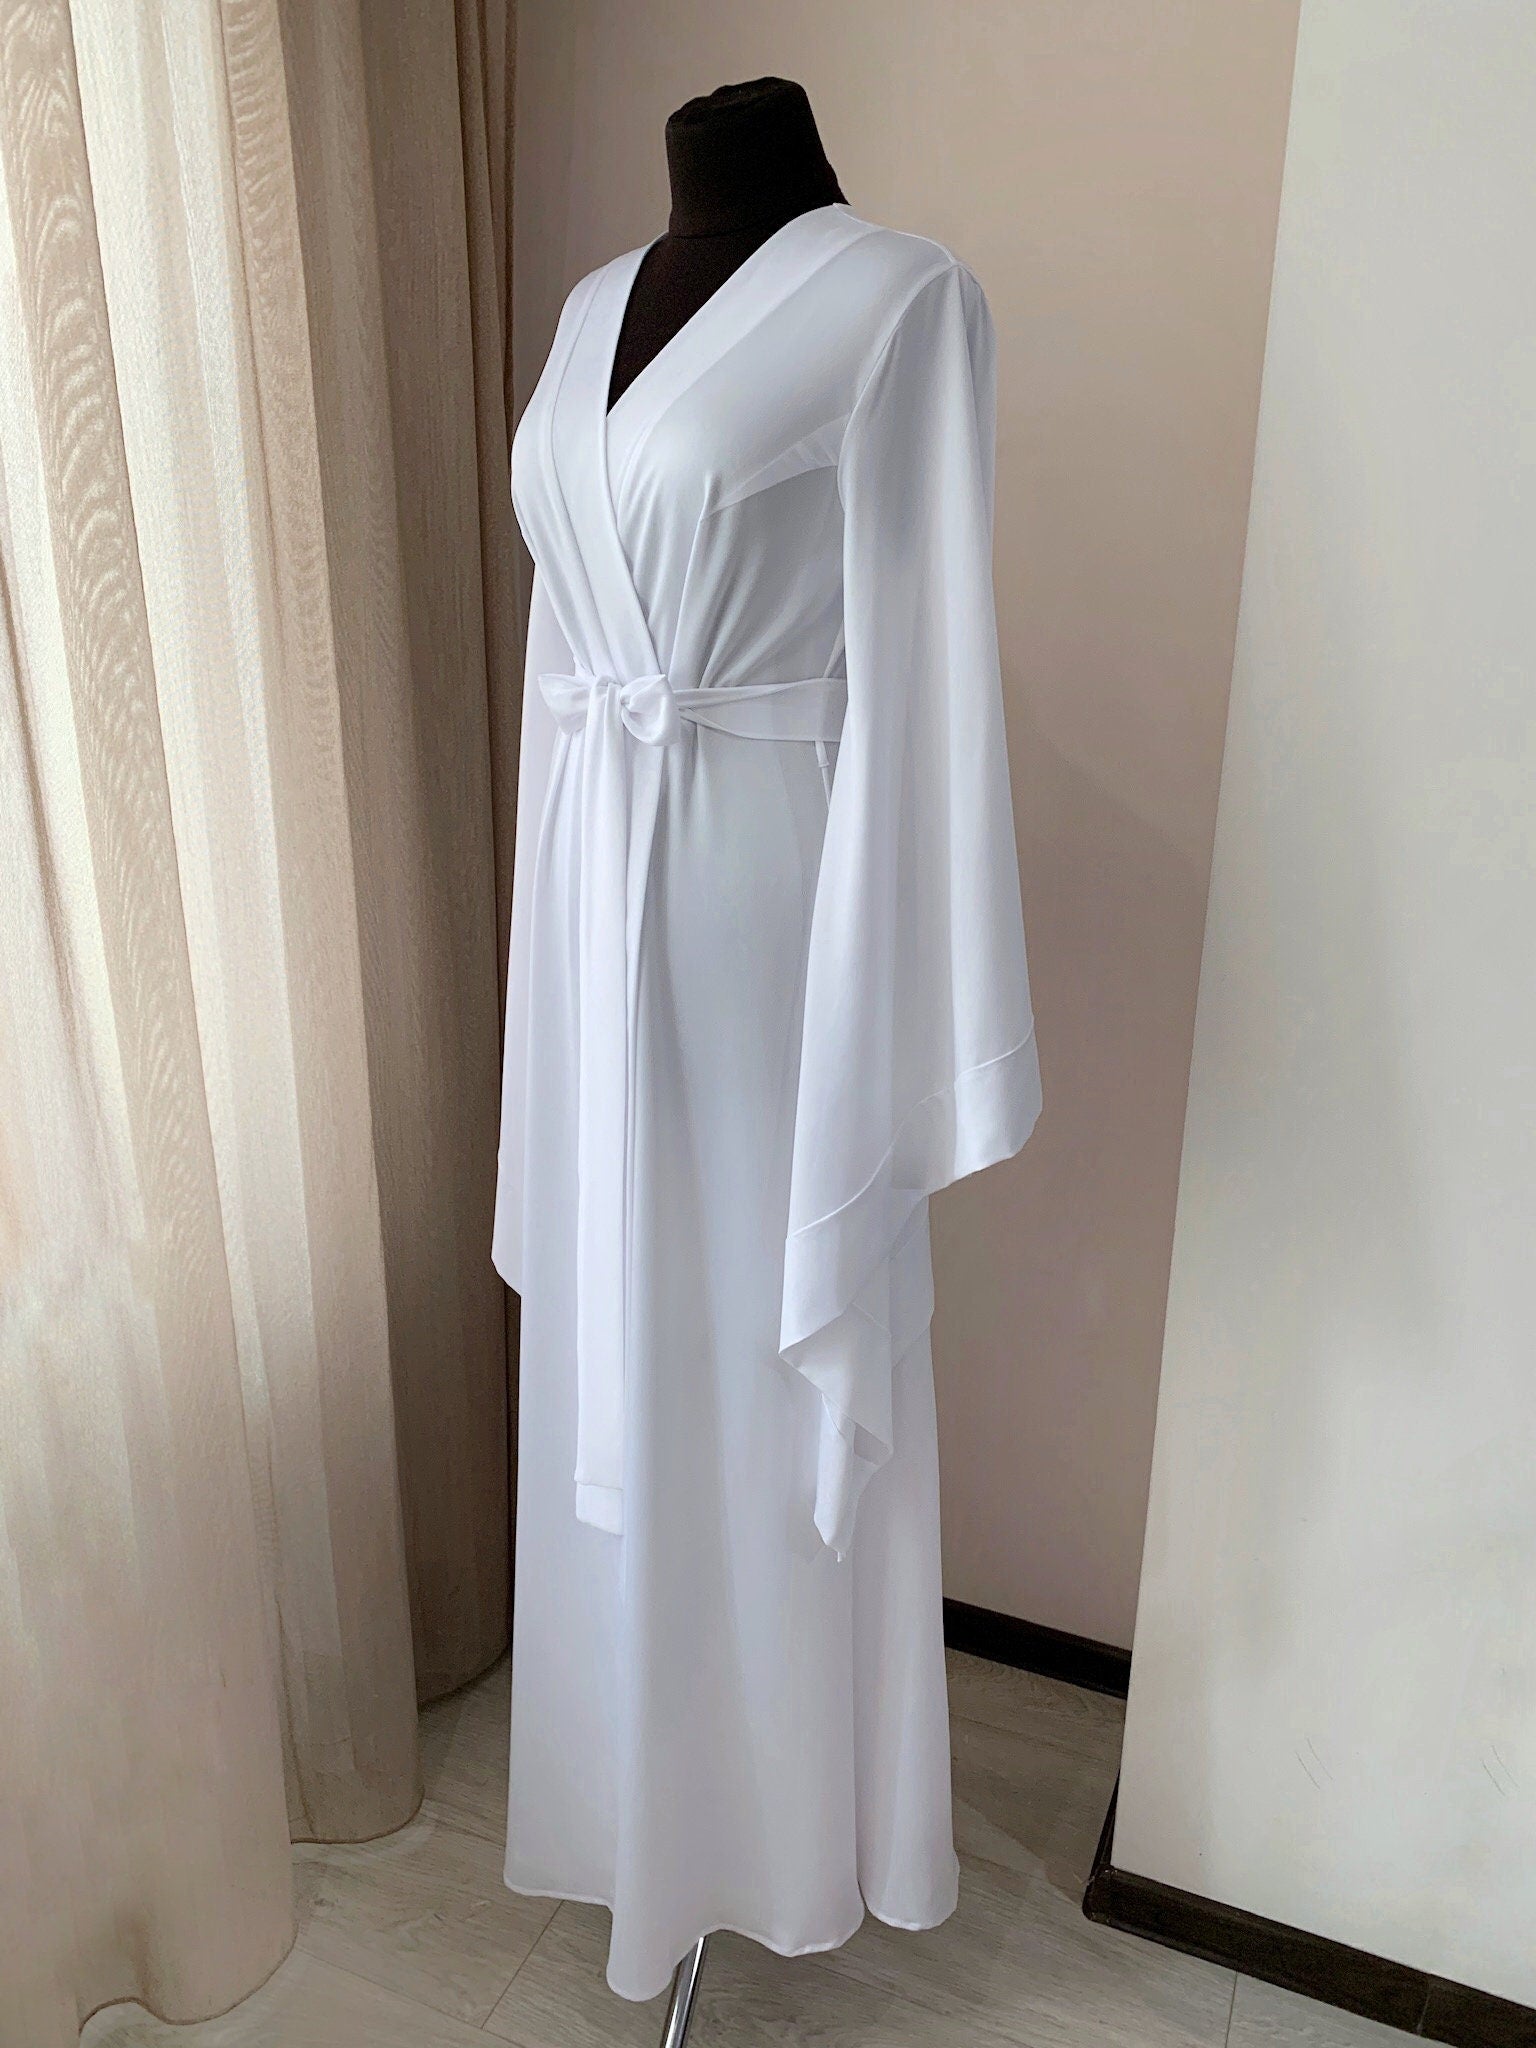 White boudoir robe